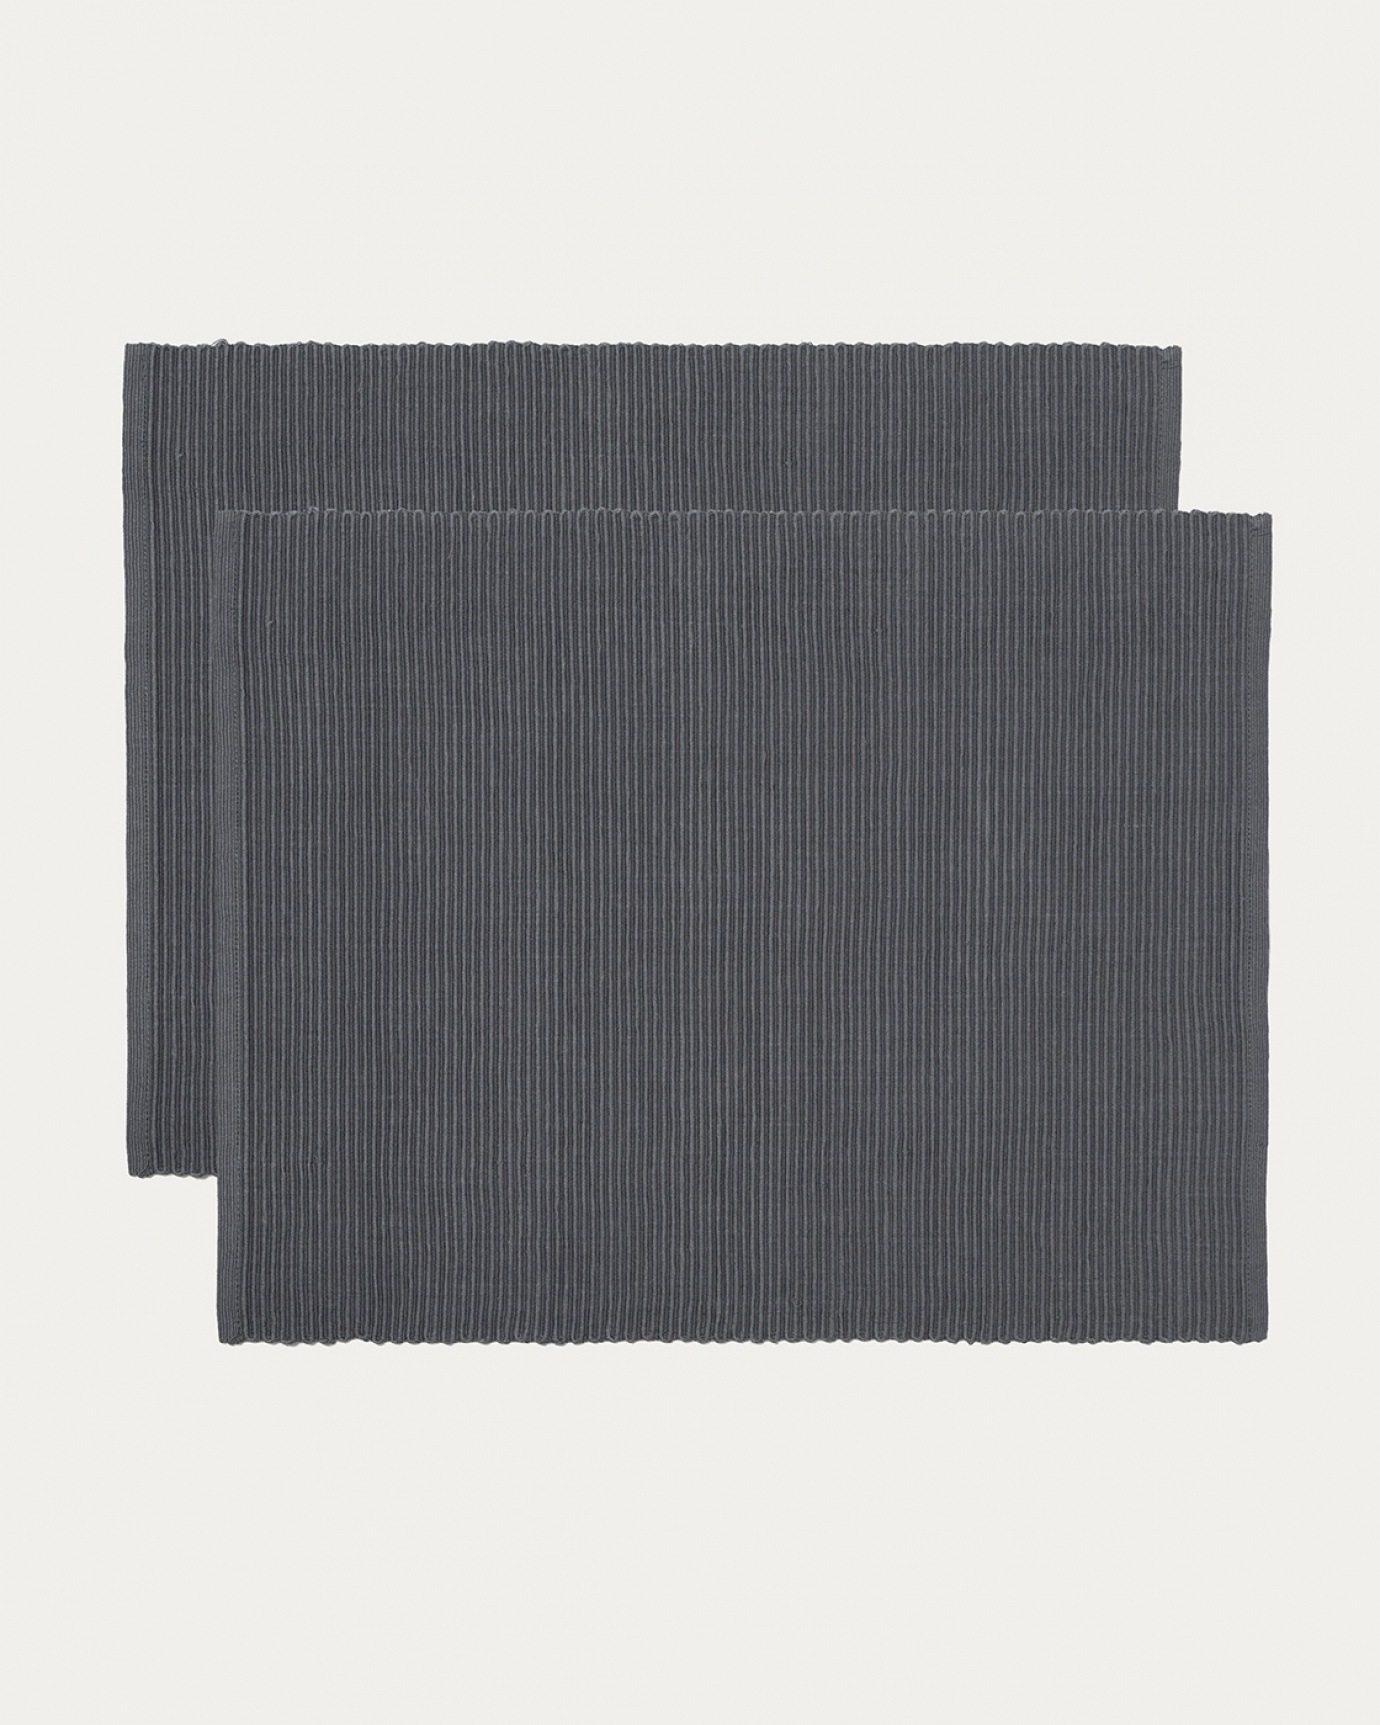 Immagine prodotto grigio granito tovaglietta UNI in morbido cotone a costine di qualità di LINUM DESIGN. Dimensioni 35x46 cm e venduto in 2-pezzi.